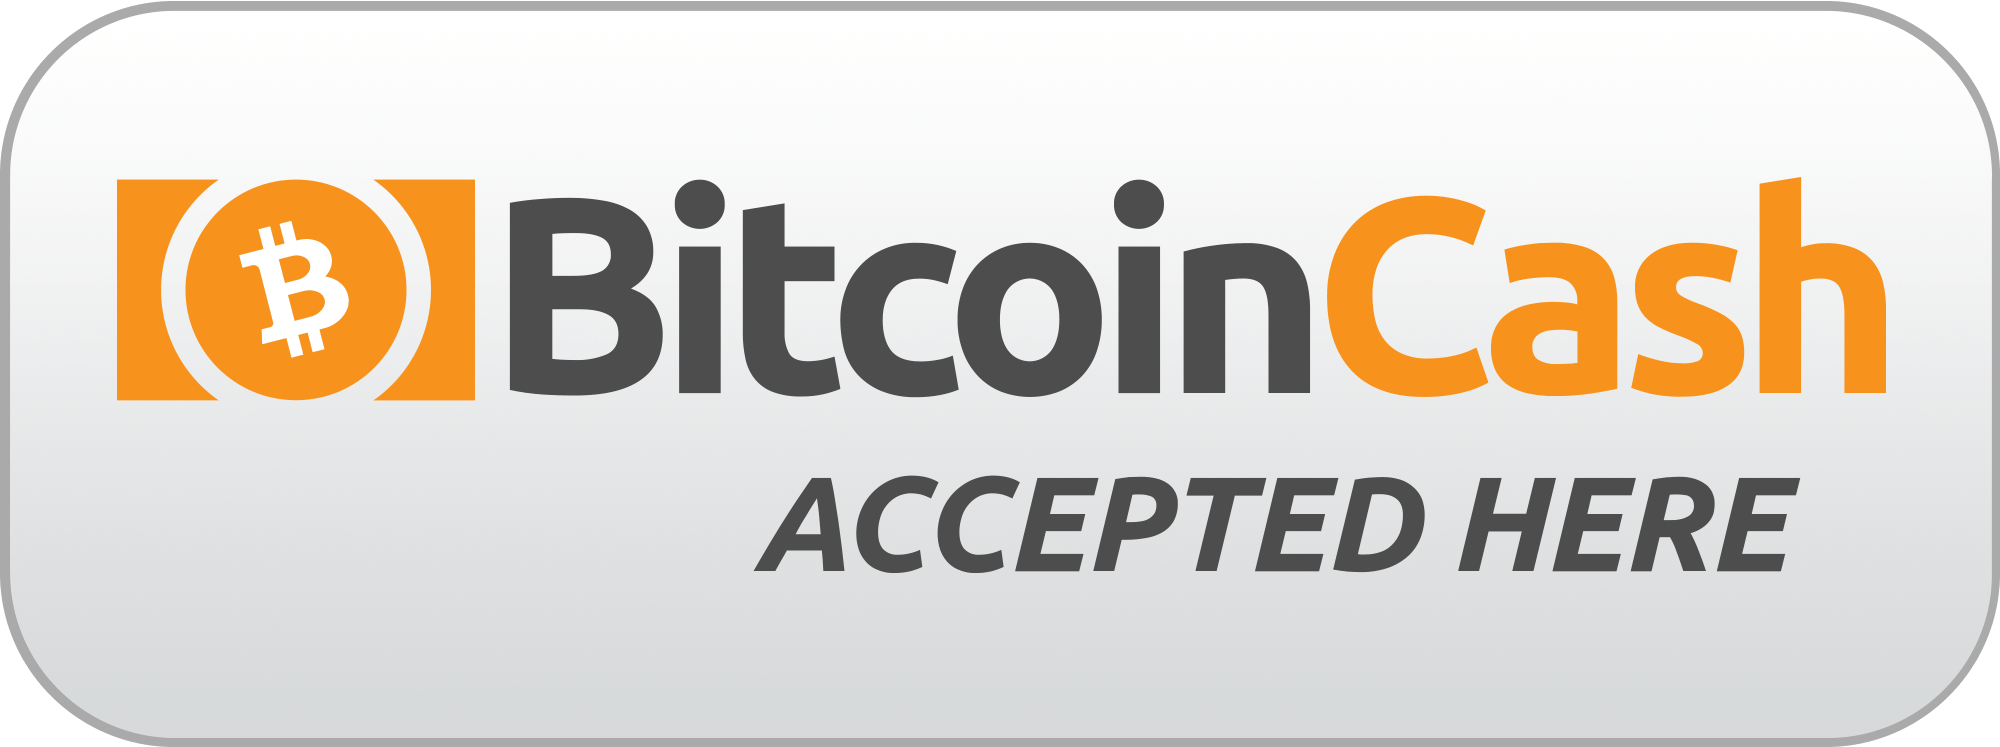 Cash Accepted Logo - Logos / Graphics - Bitcoin Cash